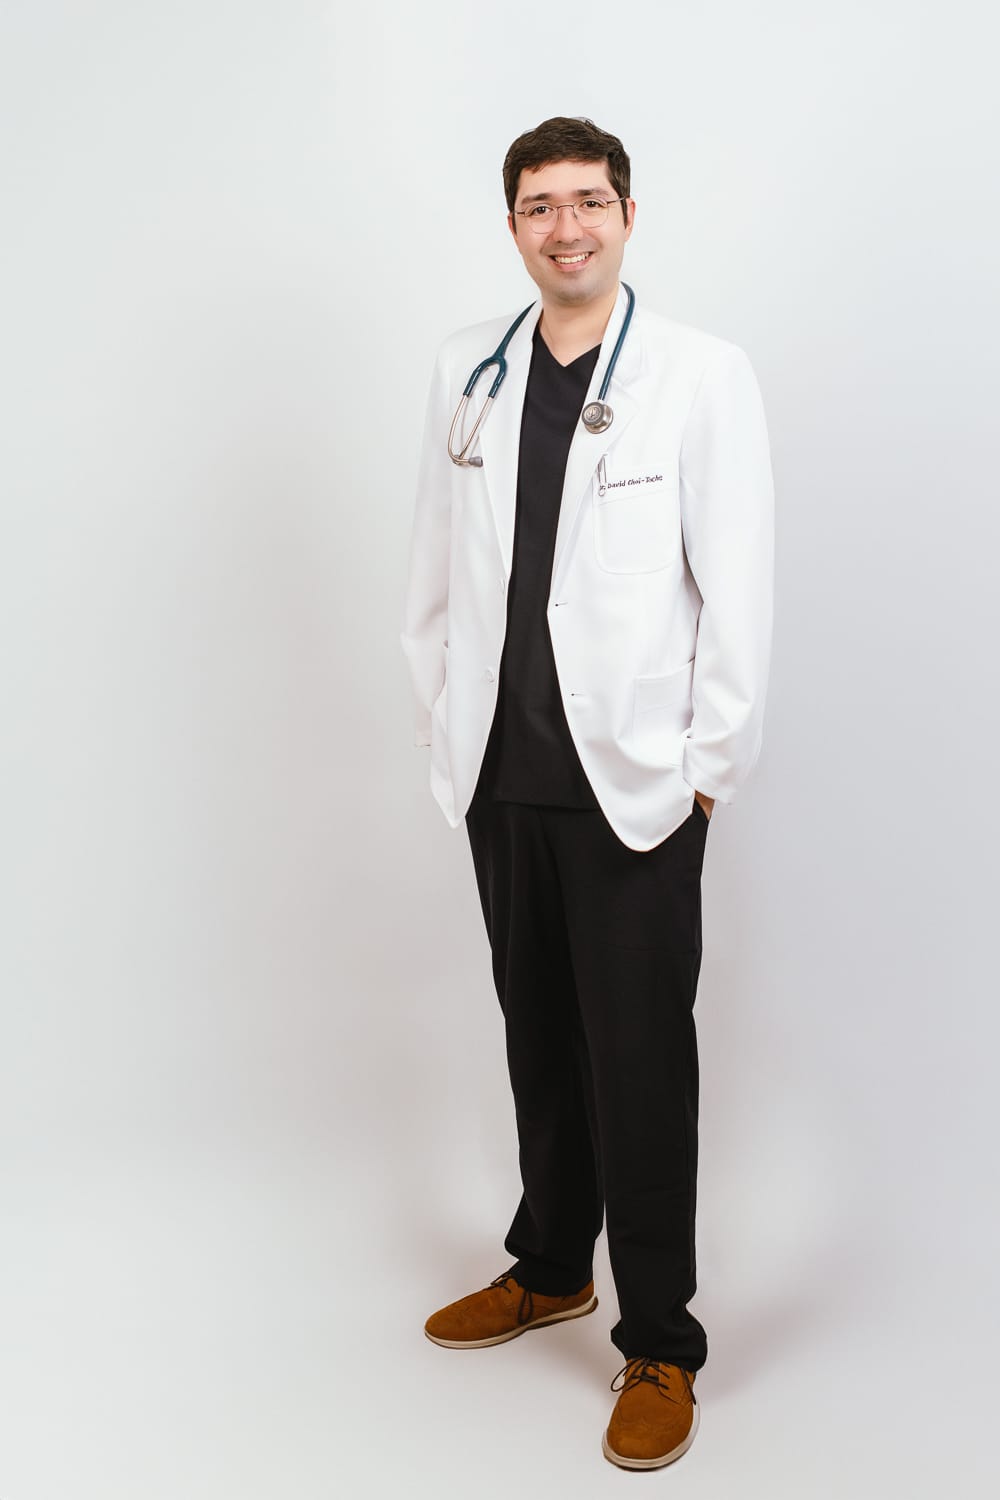 Dr David CHOI-TOCHE